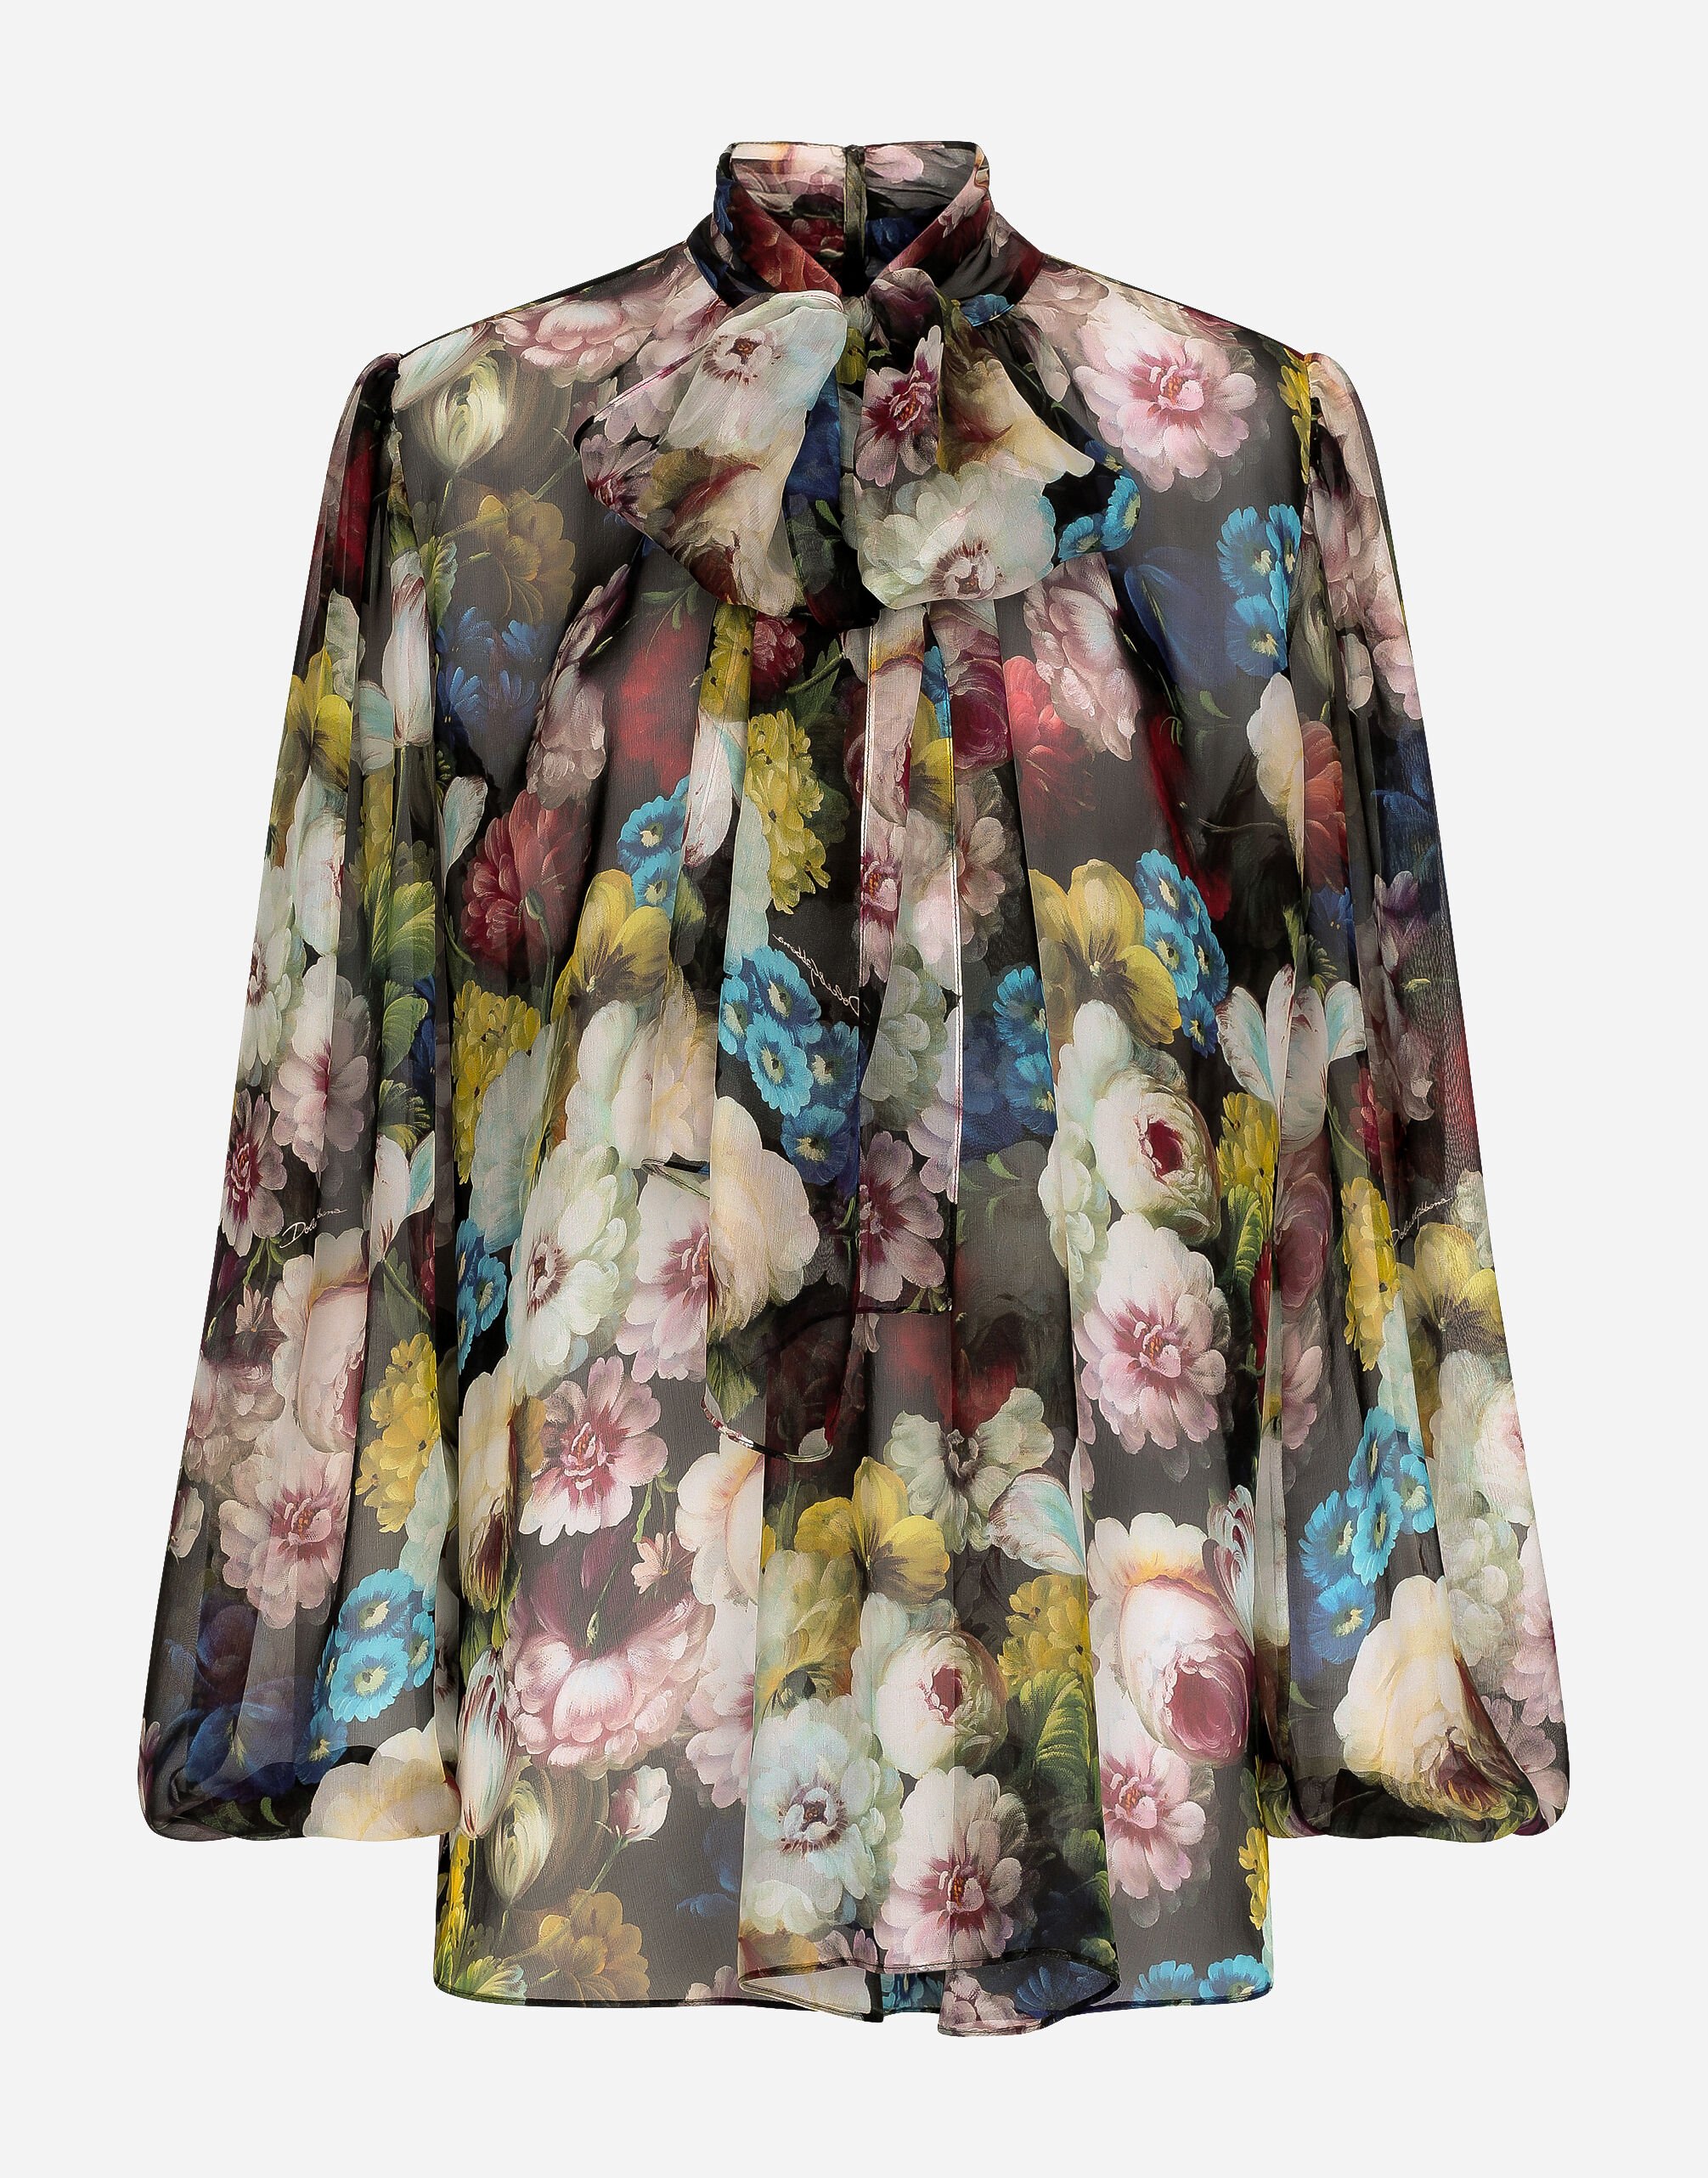 Dolce & Gabbana Рубашка из шифона с принтом ночных цветов принт F6FAITFSTBJ